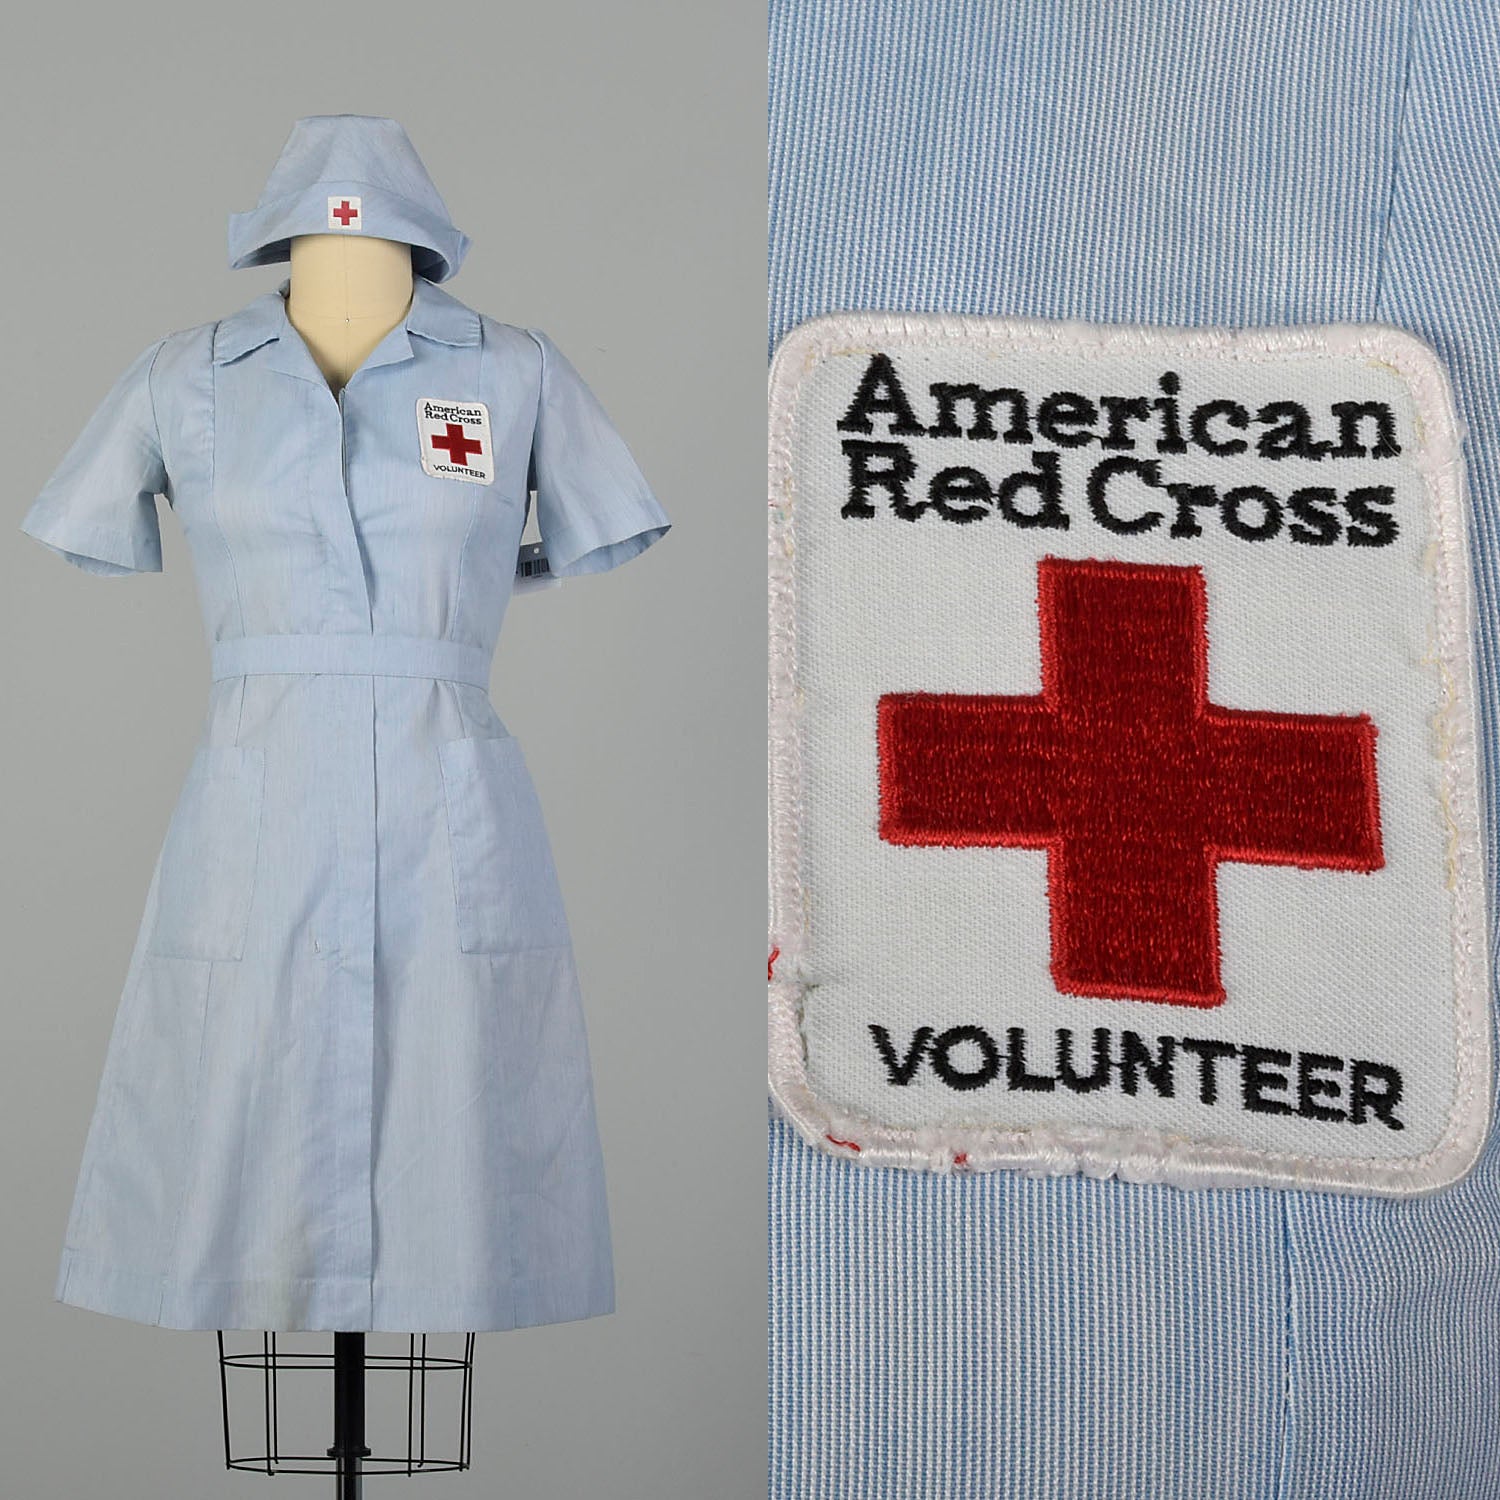 Medium 1980s Dress Red Cross Volunteer Uniform Military Short Sleeve